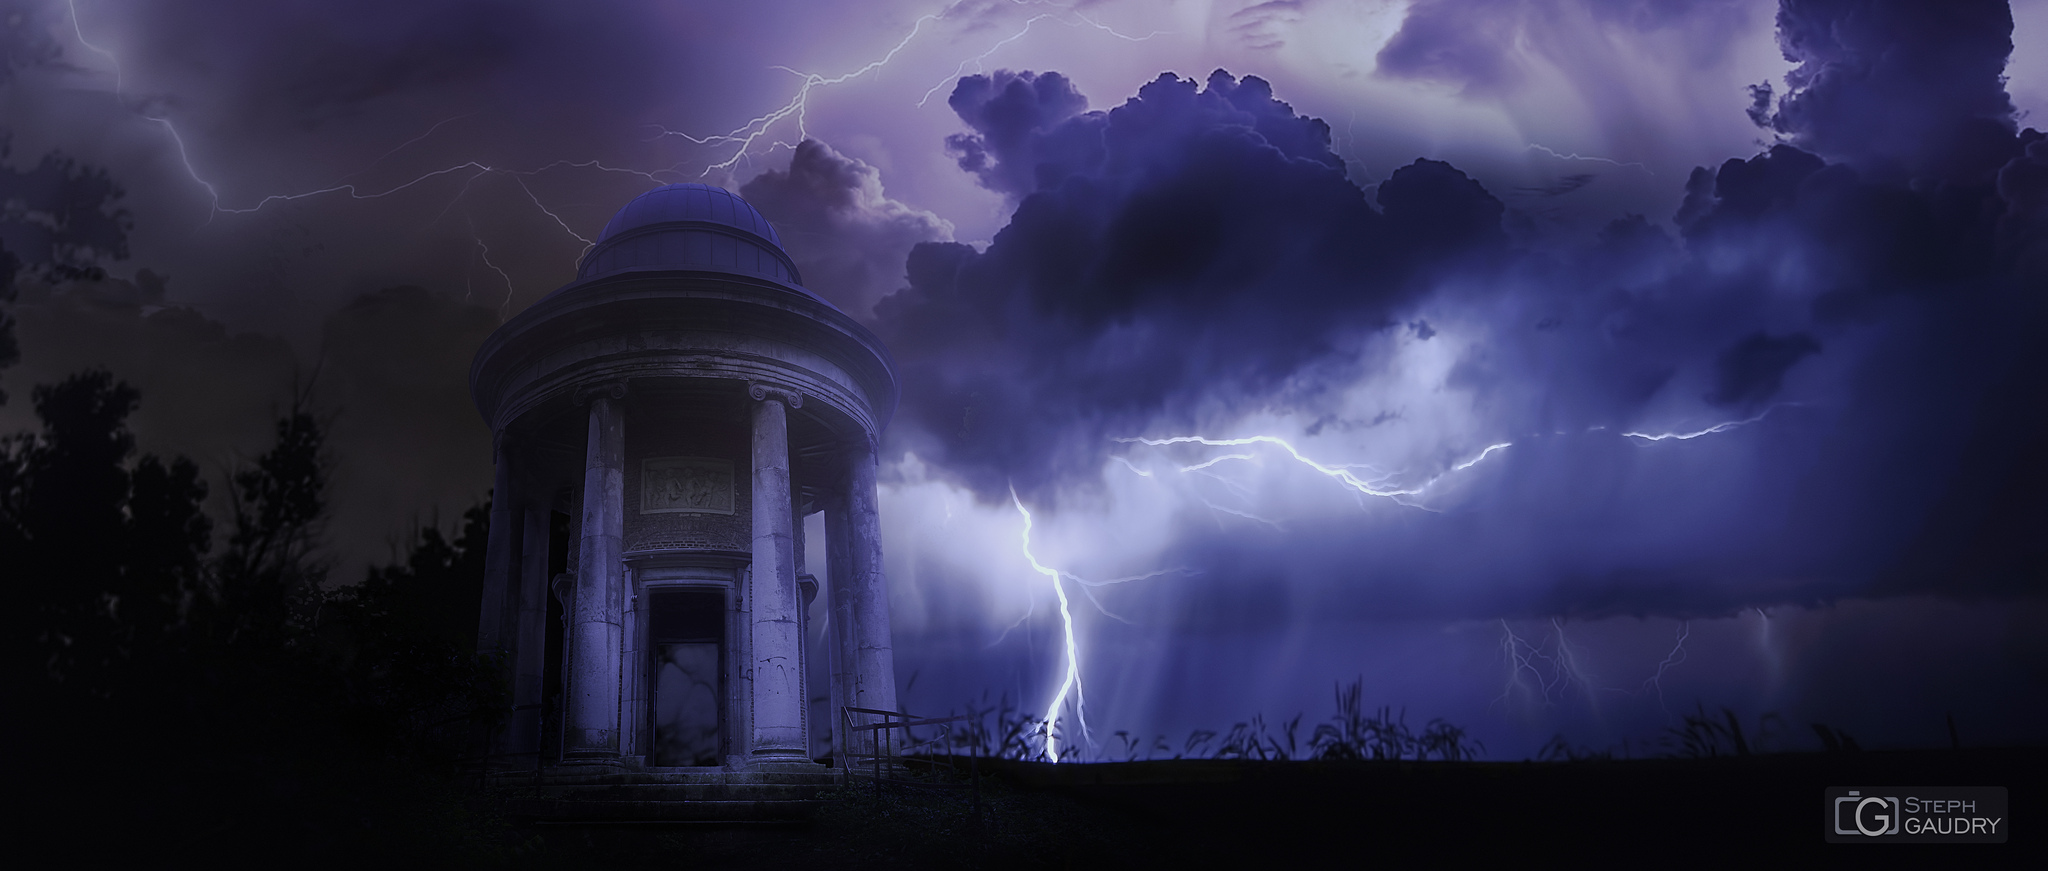 Les délires / Storm rumbling on lost  temple